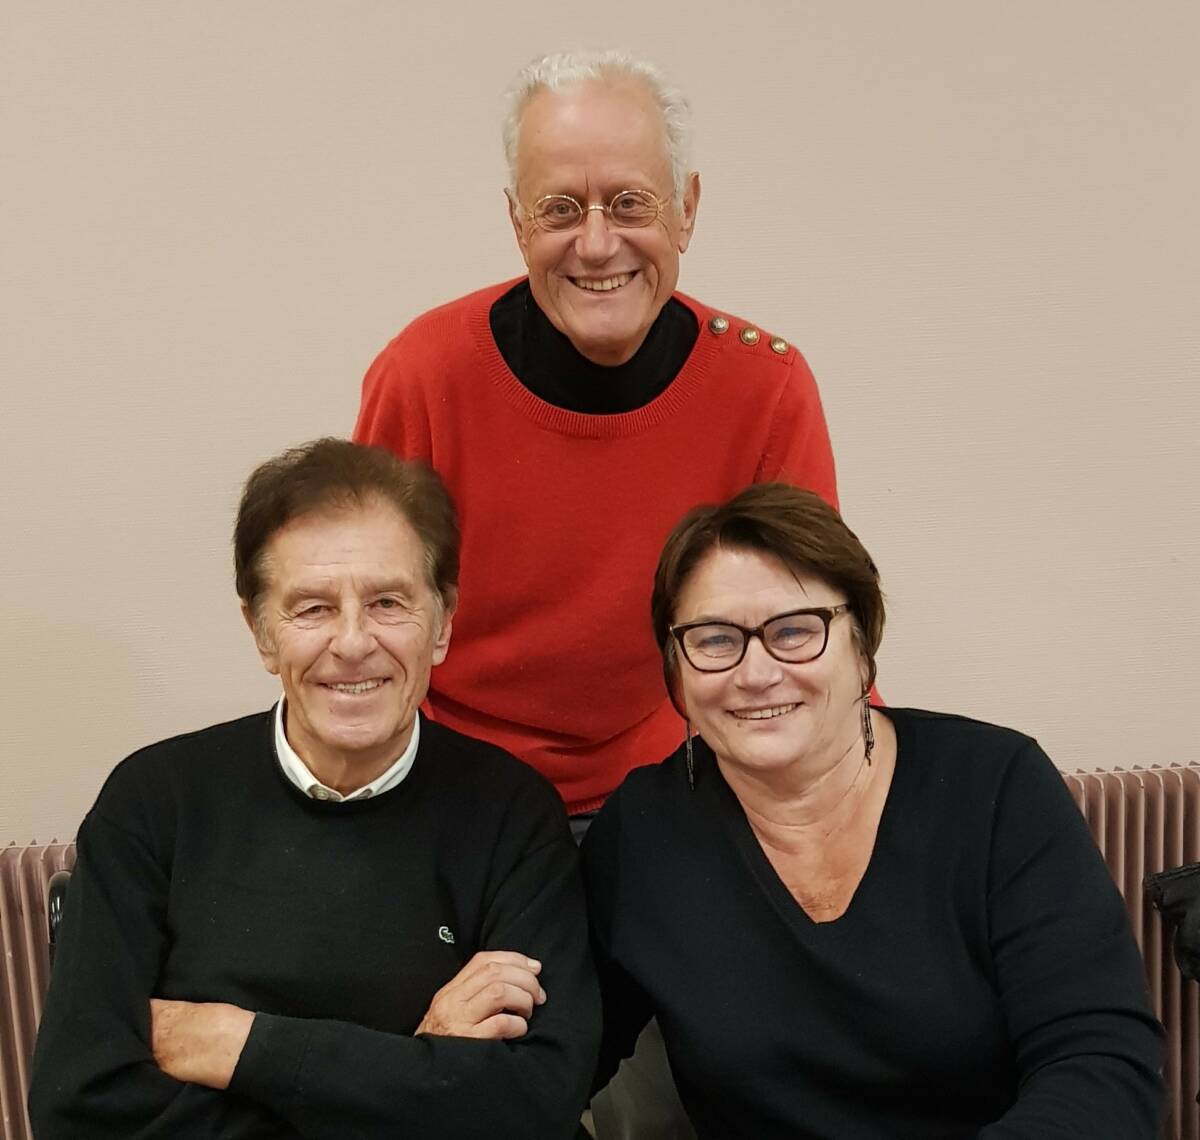 Rencontre avec Henri Sannier et madame, au salon du livre de Mortain, le 28/11/21. Henri fut présentateur des JT de France Télévisions.